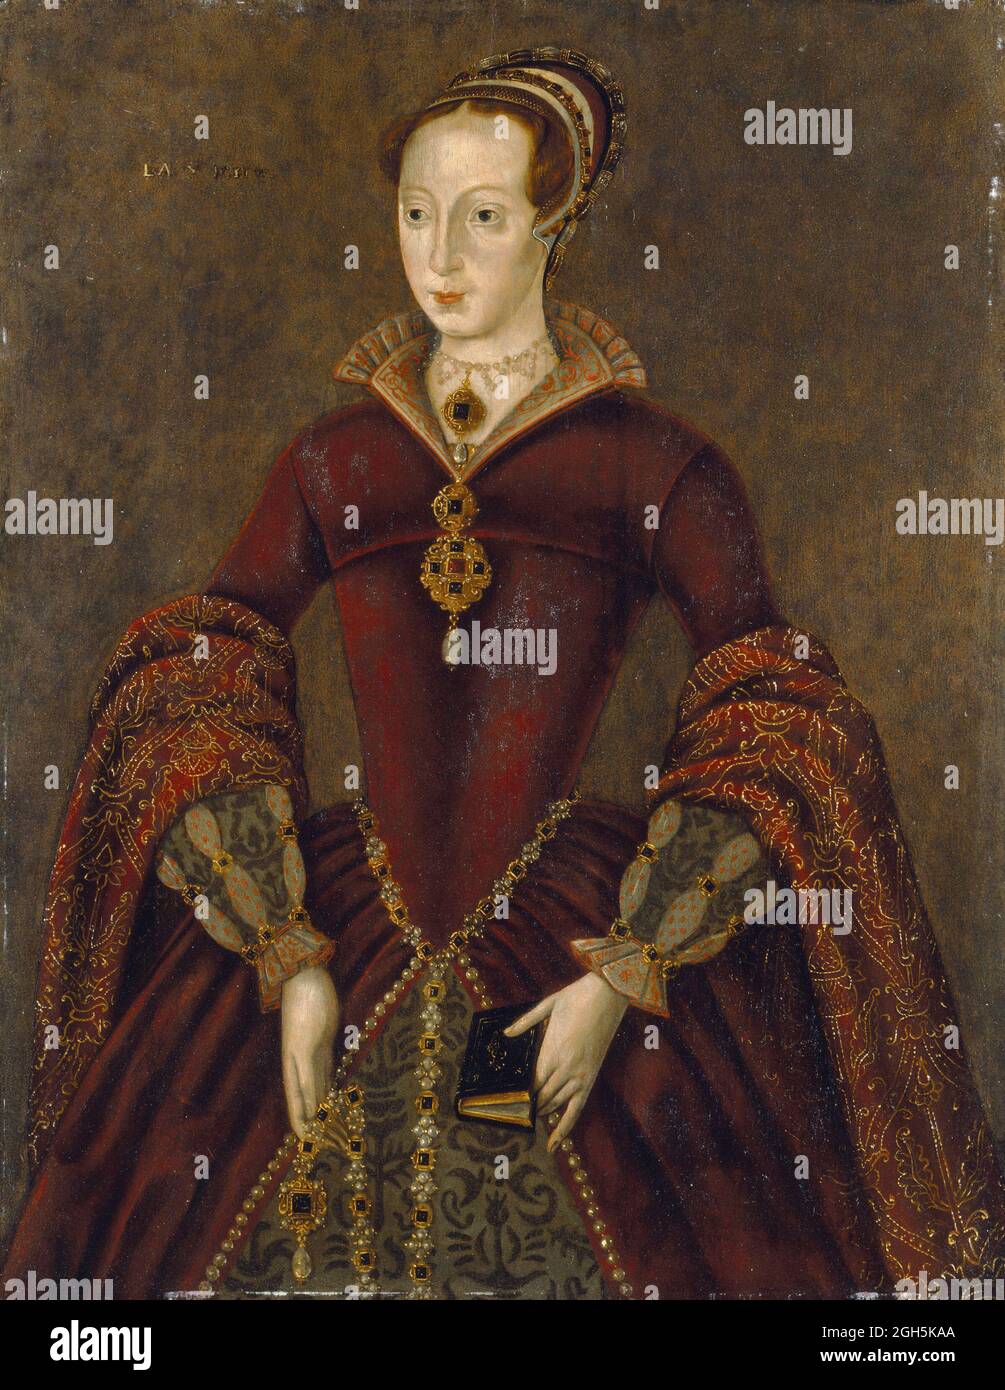 Un ritratto di Lady Jane Dudley (Lady Jane Gray) che fu Regina d'Inghilterra per 9 giorni nel 1553 prima di essere decapitata all'età di 16 anni. Foto Stock